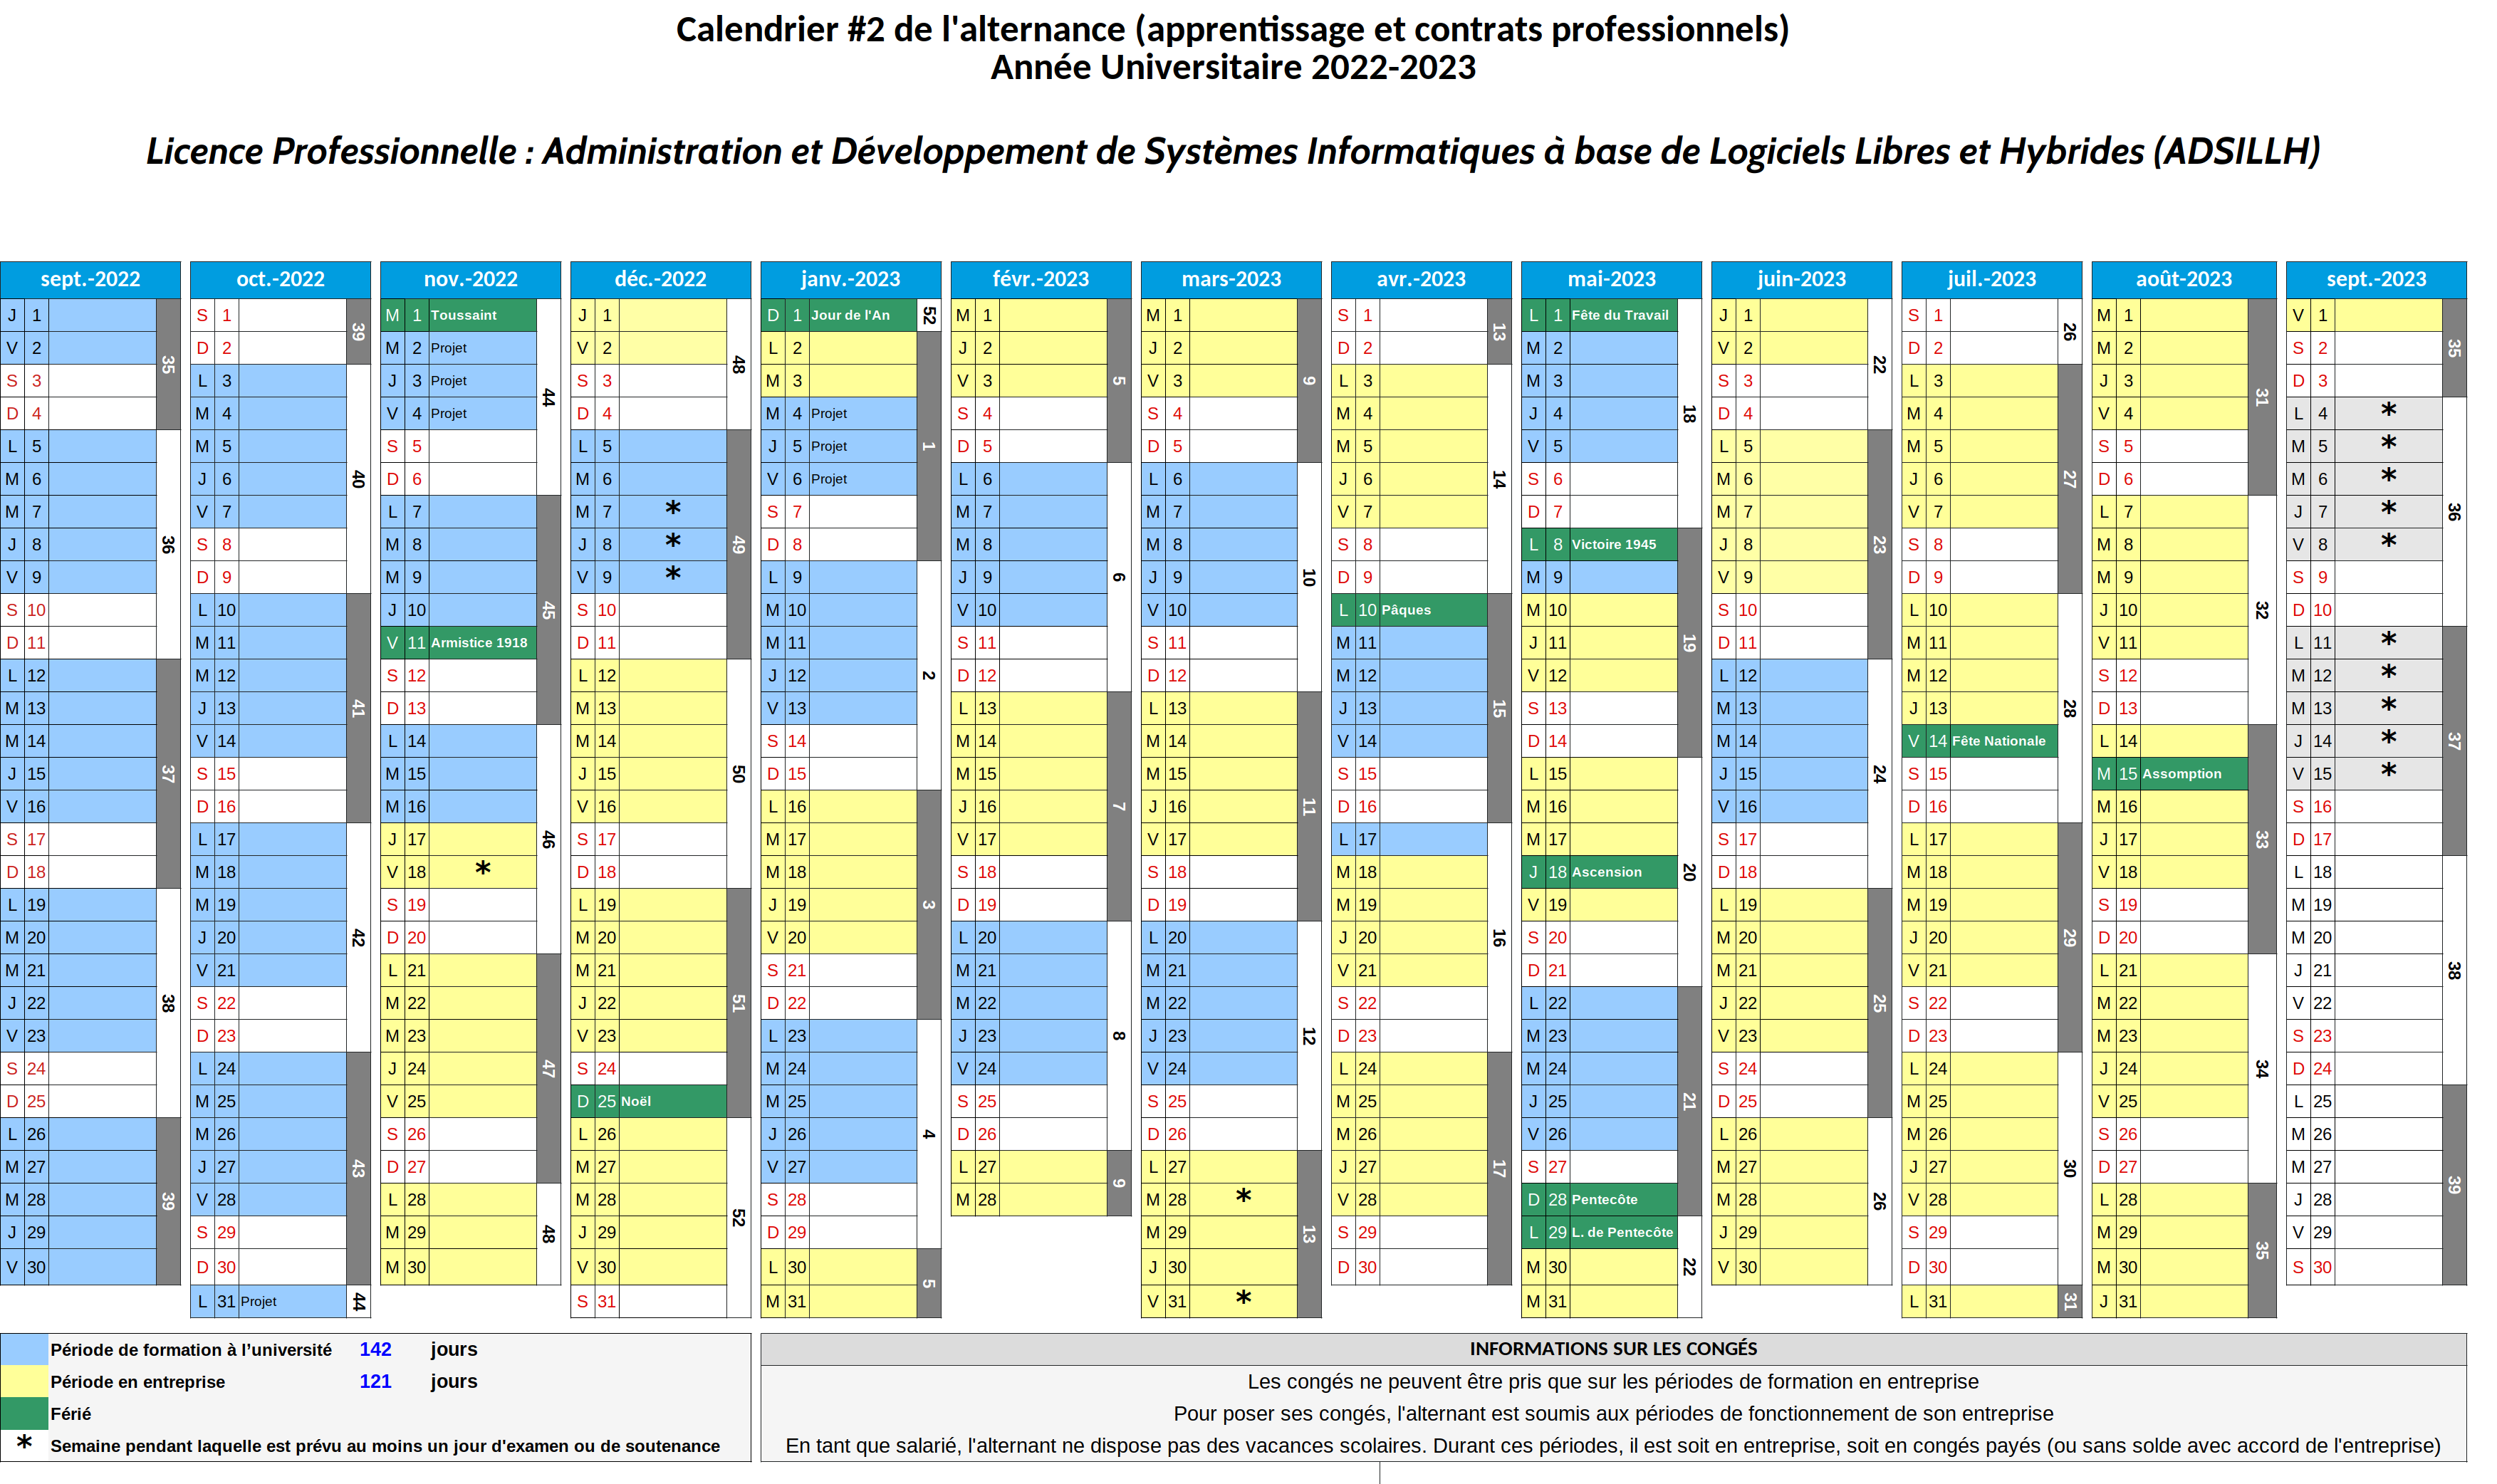 Calendrier prévisionnel (2022-2023) [alternance 2]